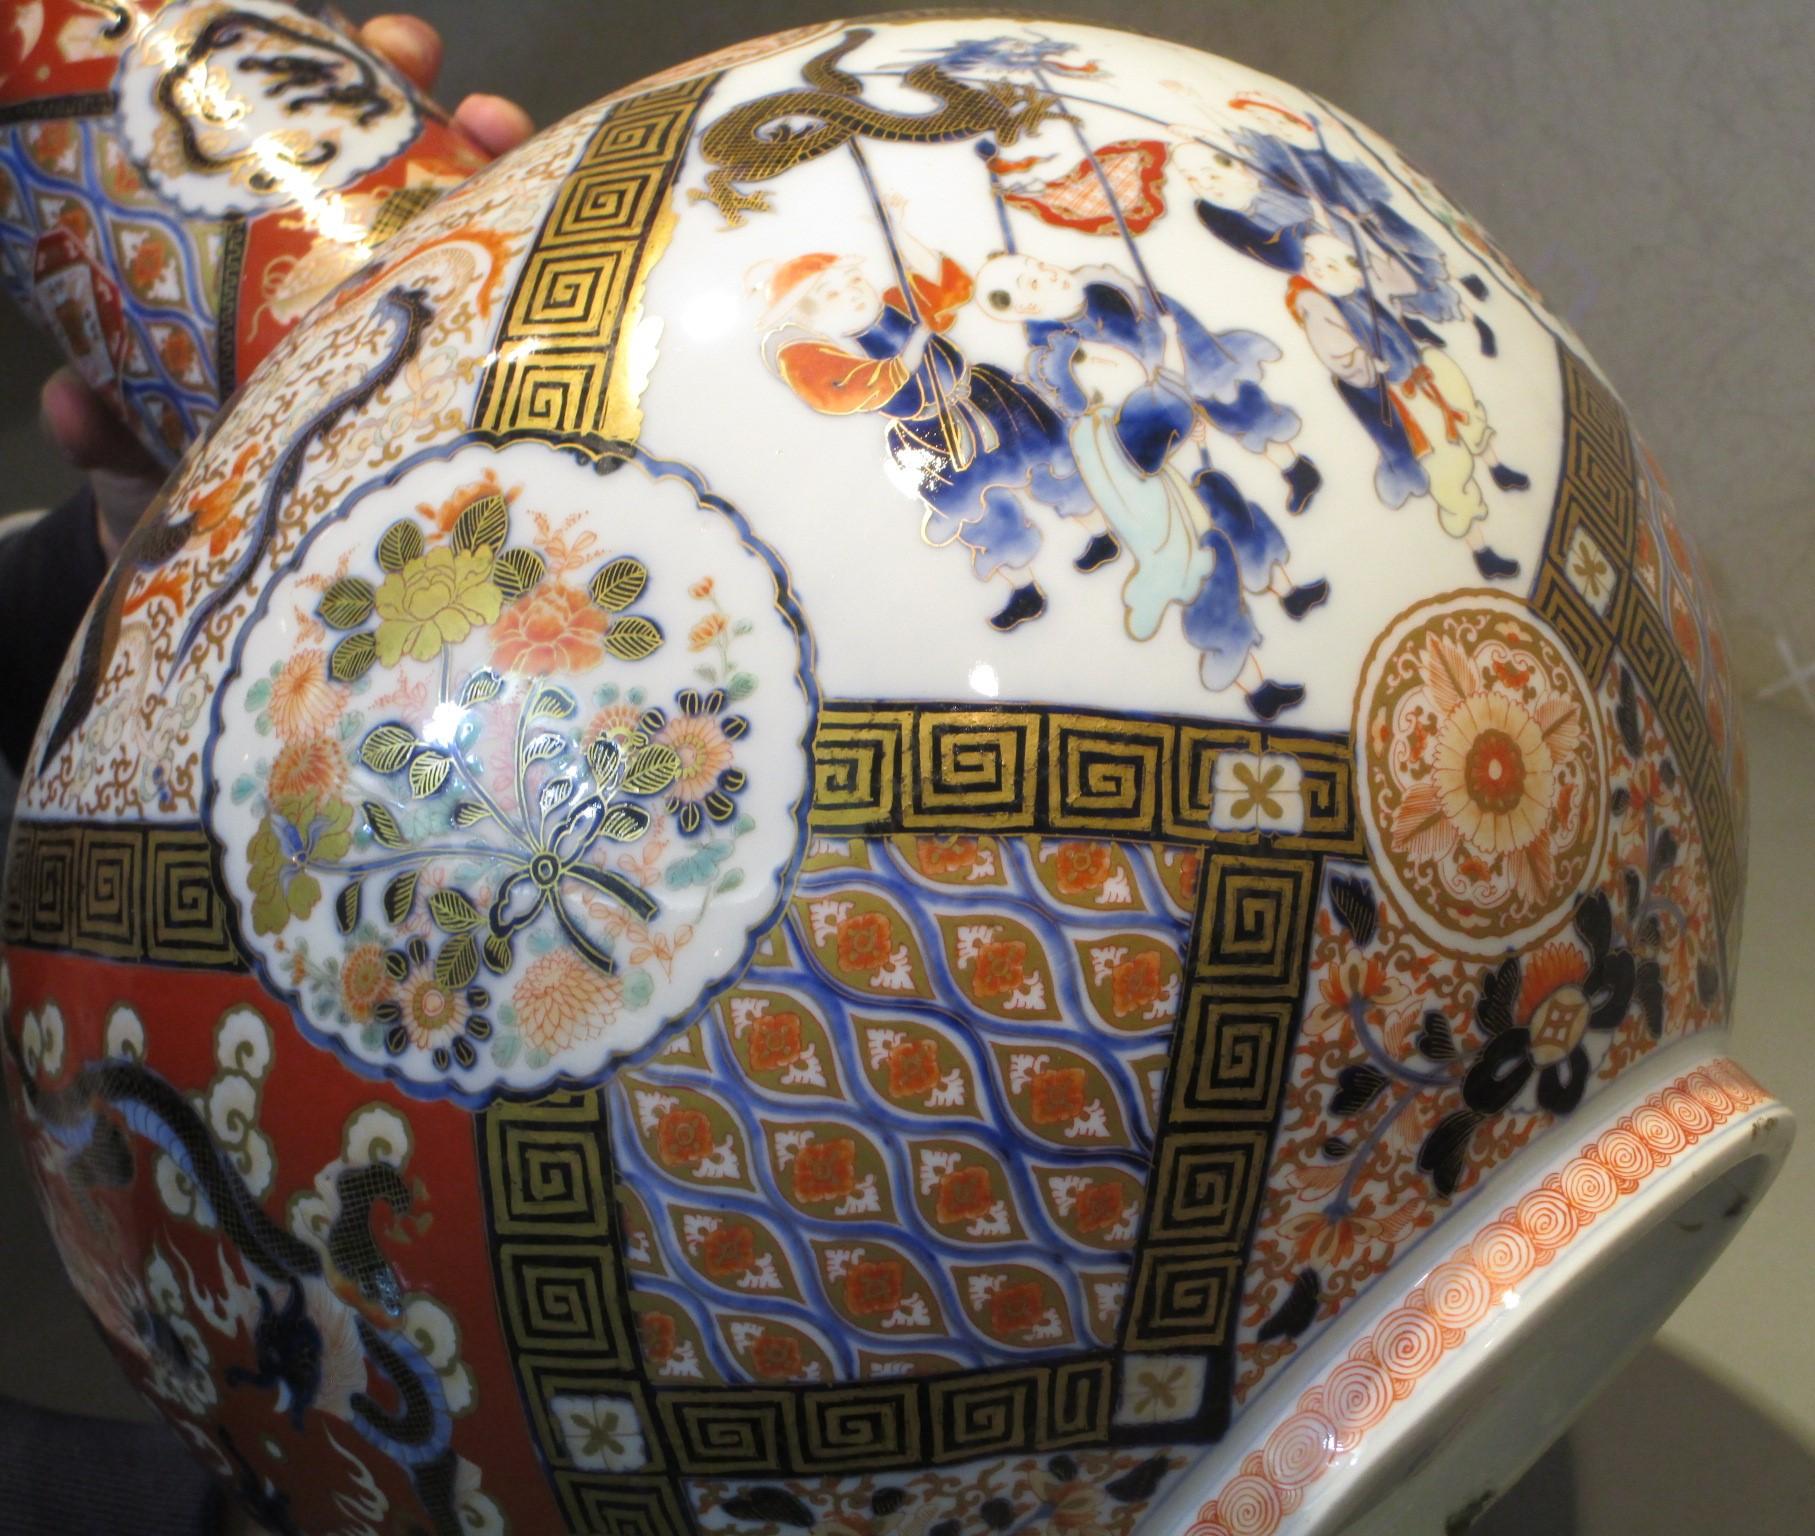 Superbe paire de grands vases japonais en porcelaine d'époque Meiji signés Fukagawa (vers 1900). Le corps de la bouteille est peint à la main en bleu de cobalt sous glaçure avec polychromie et surglaçure d'or. Le long col est élégant et se détache